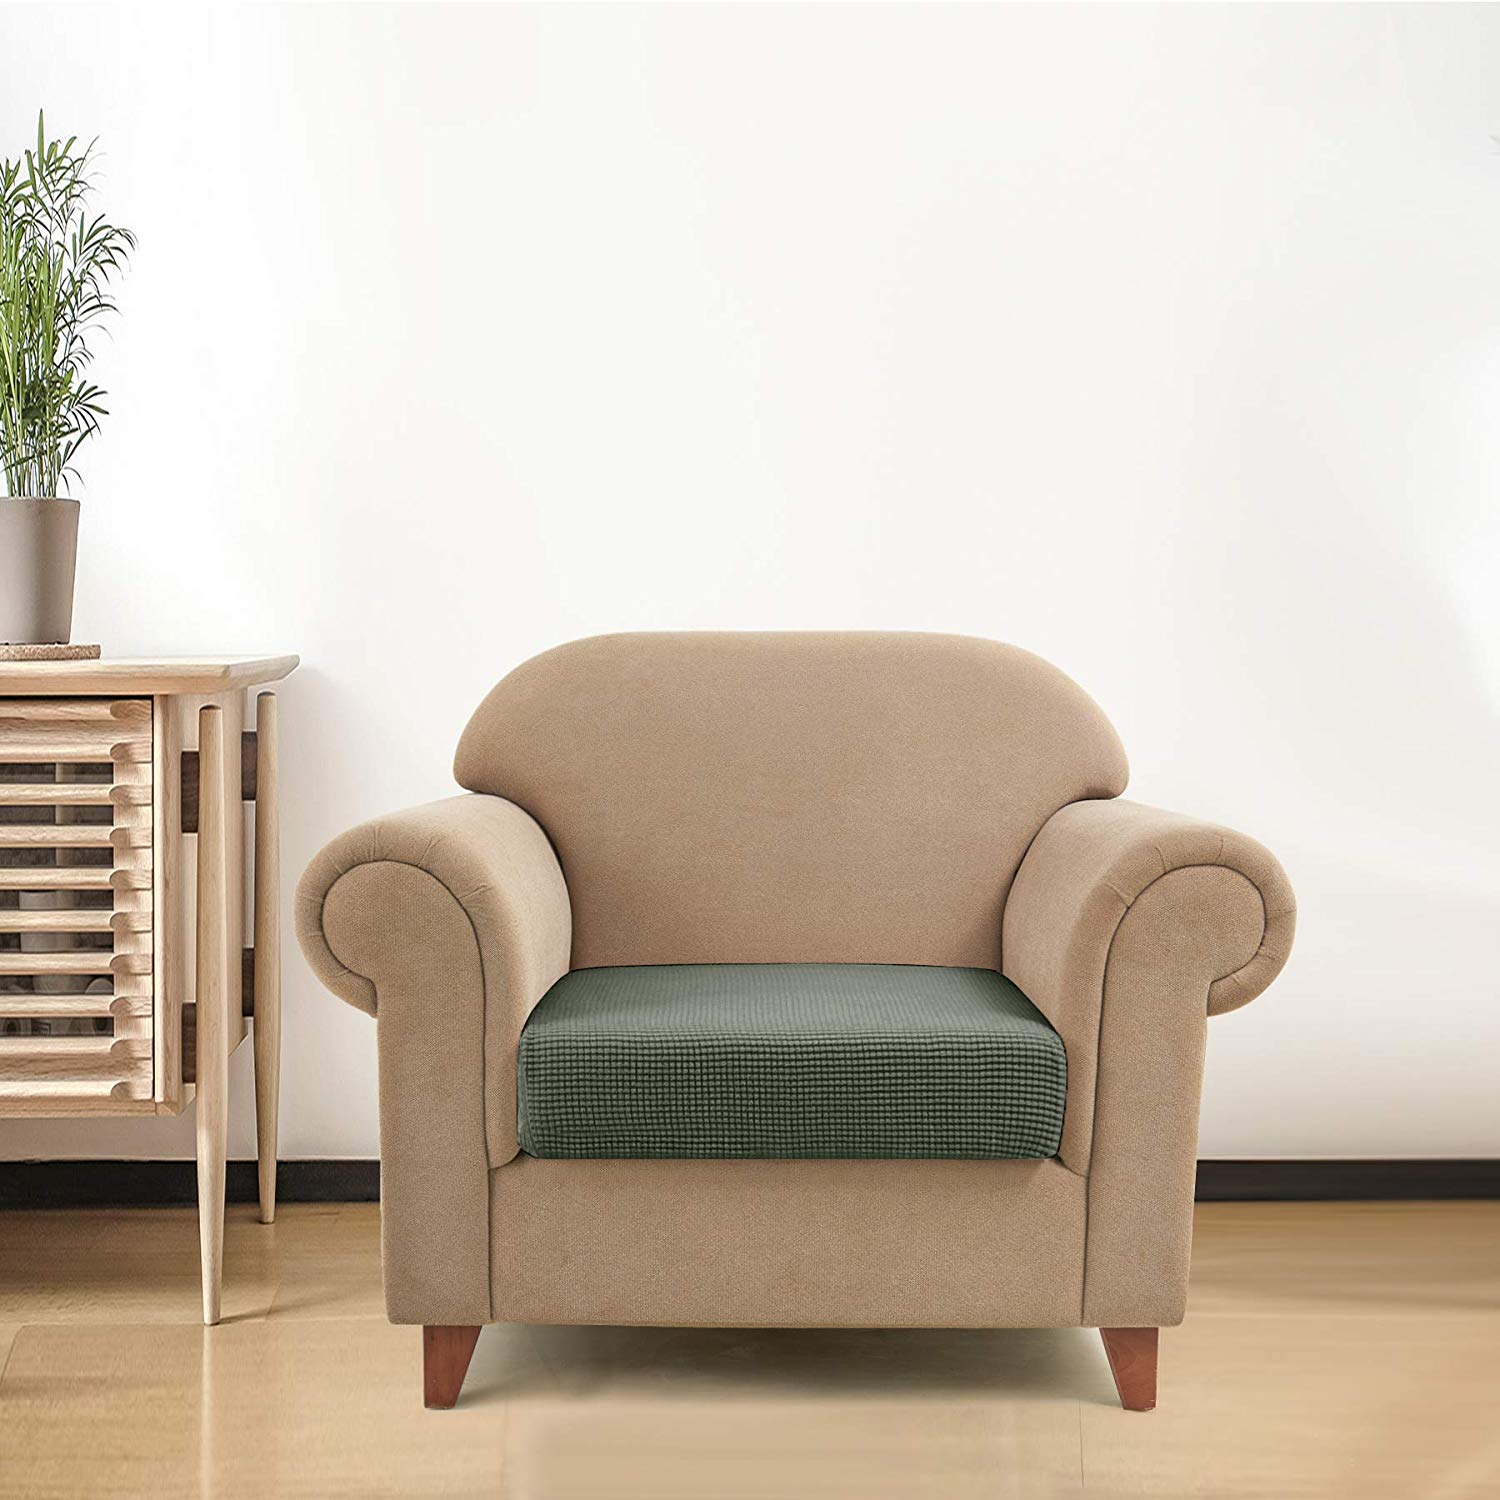 Chair / Olive Drab Plaid